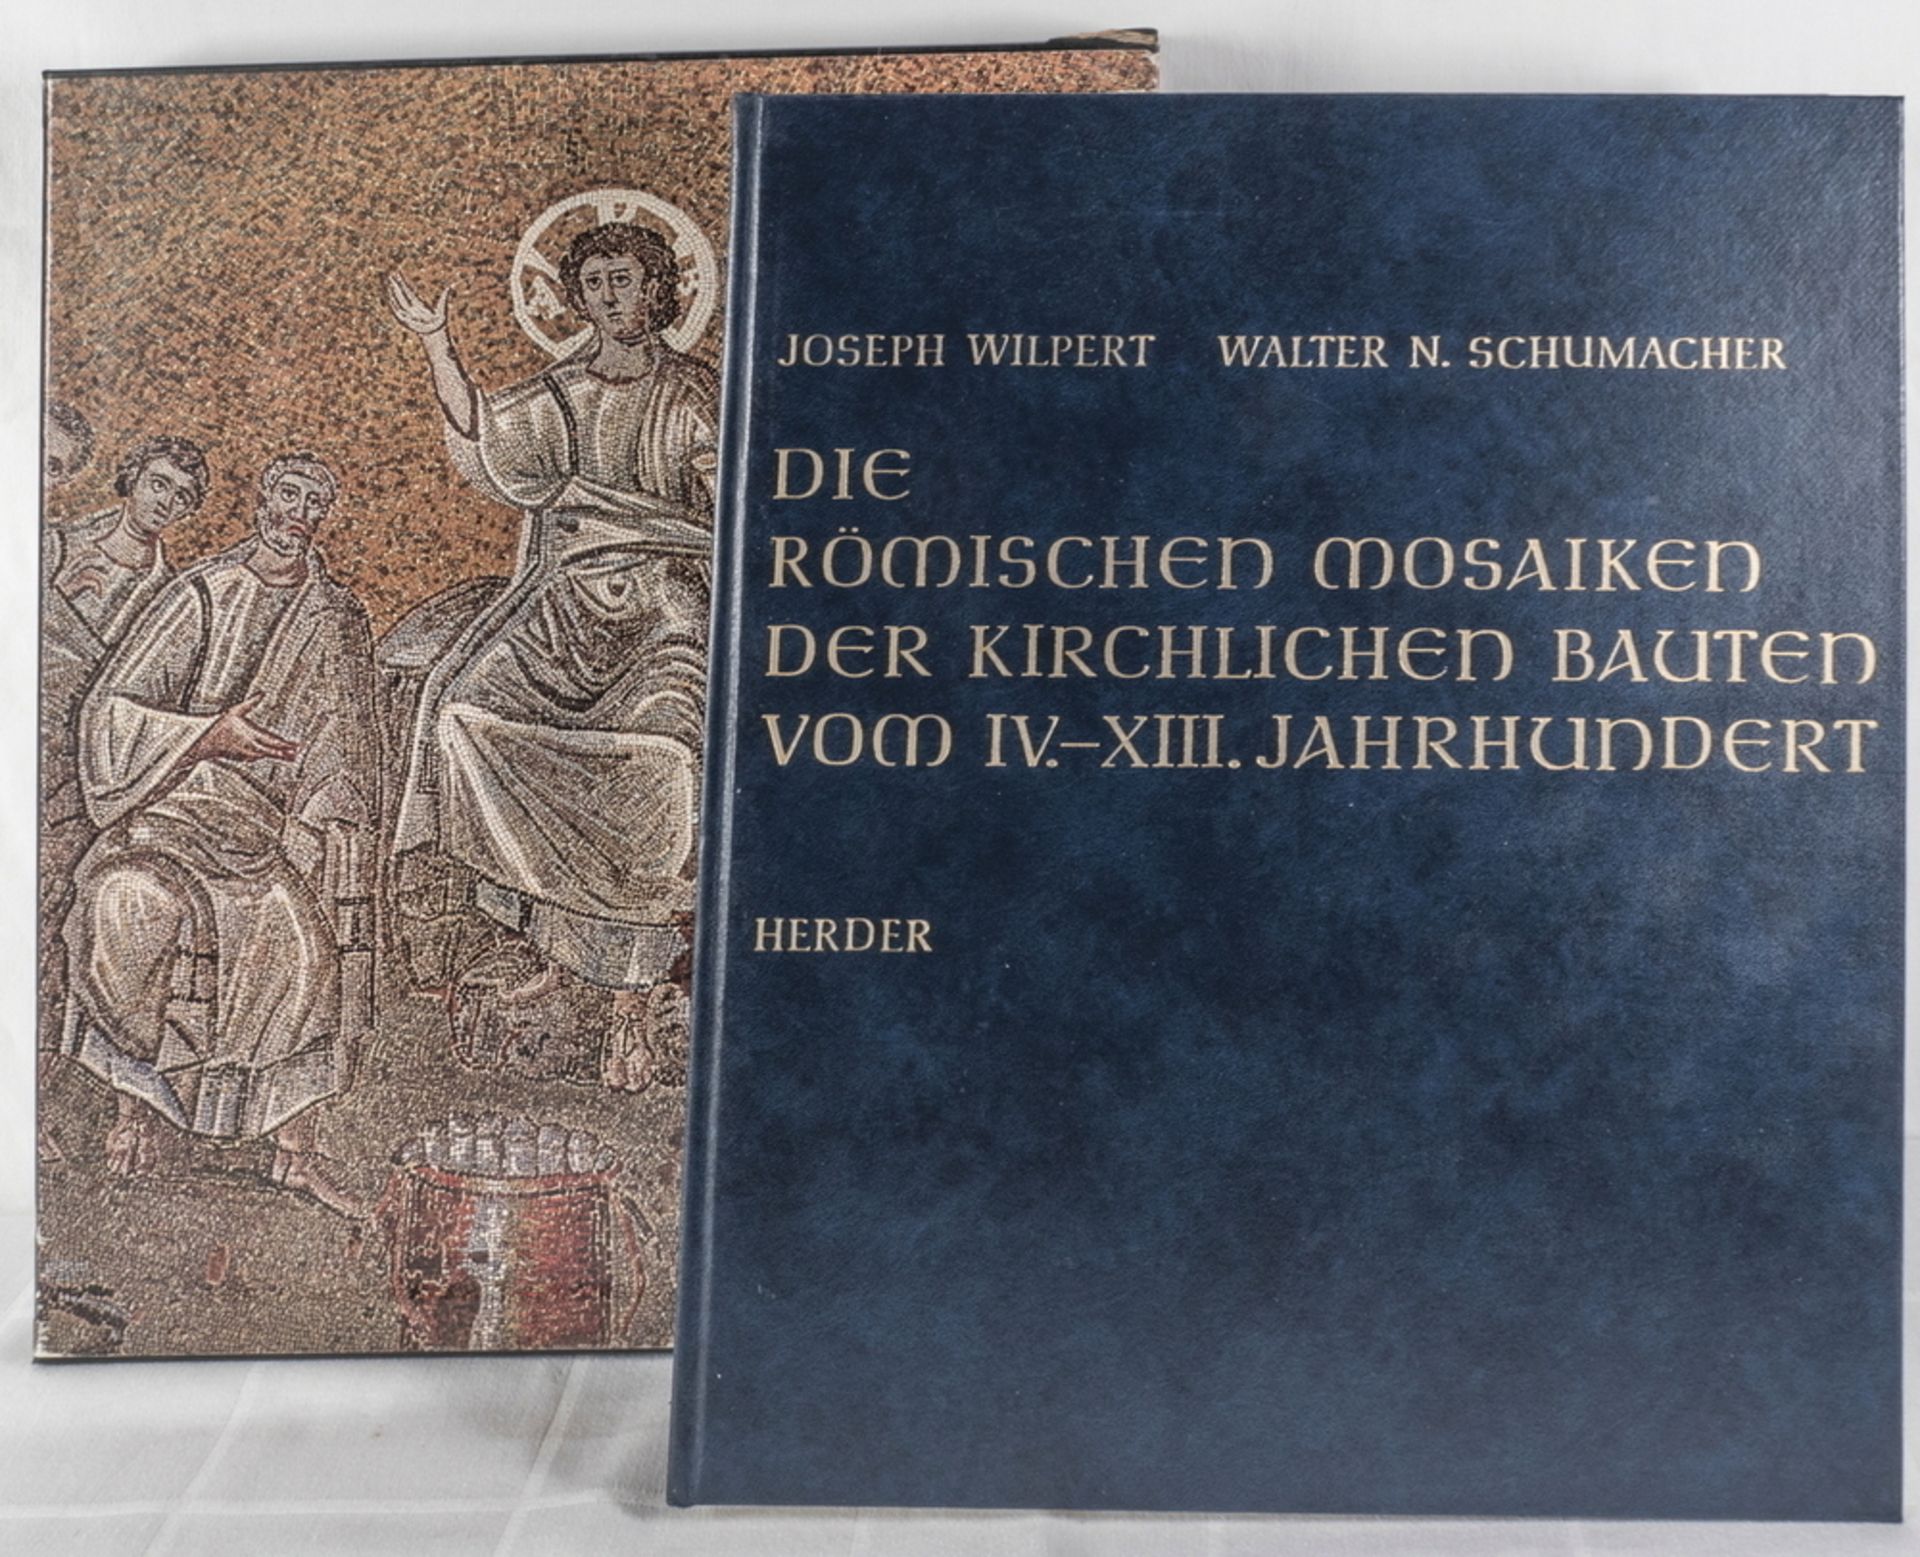 Joseph Wilpert / Walter N. Schumacher, "Die römischen Mosaiken der kirchlichen Bauten vom IV: -